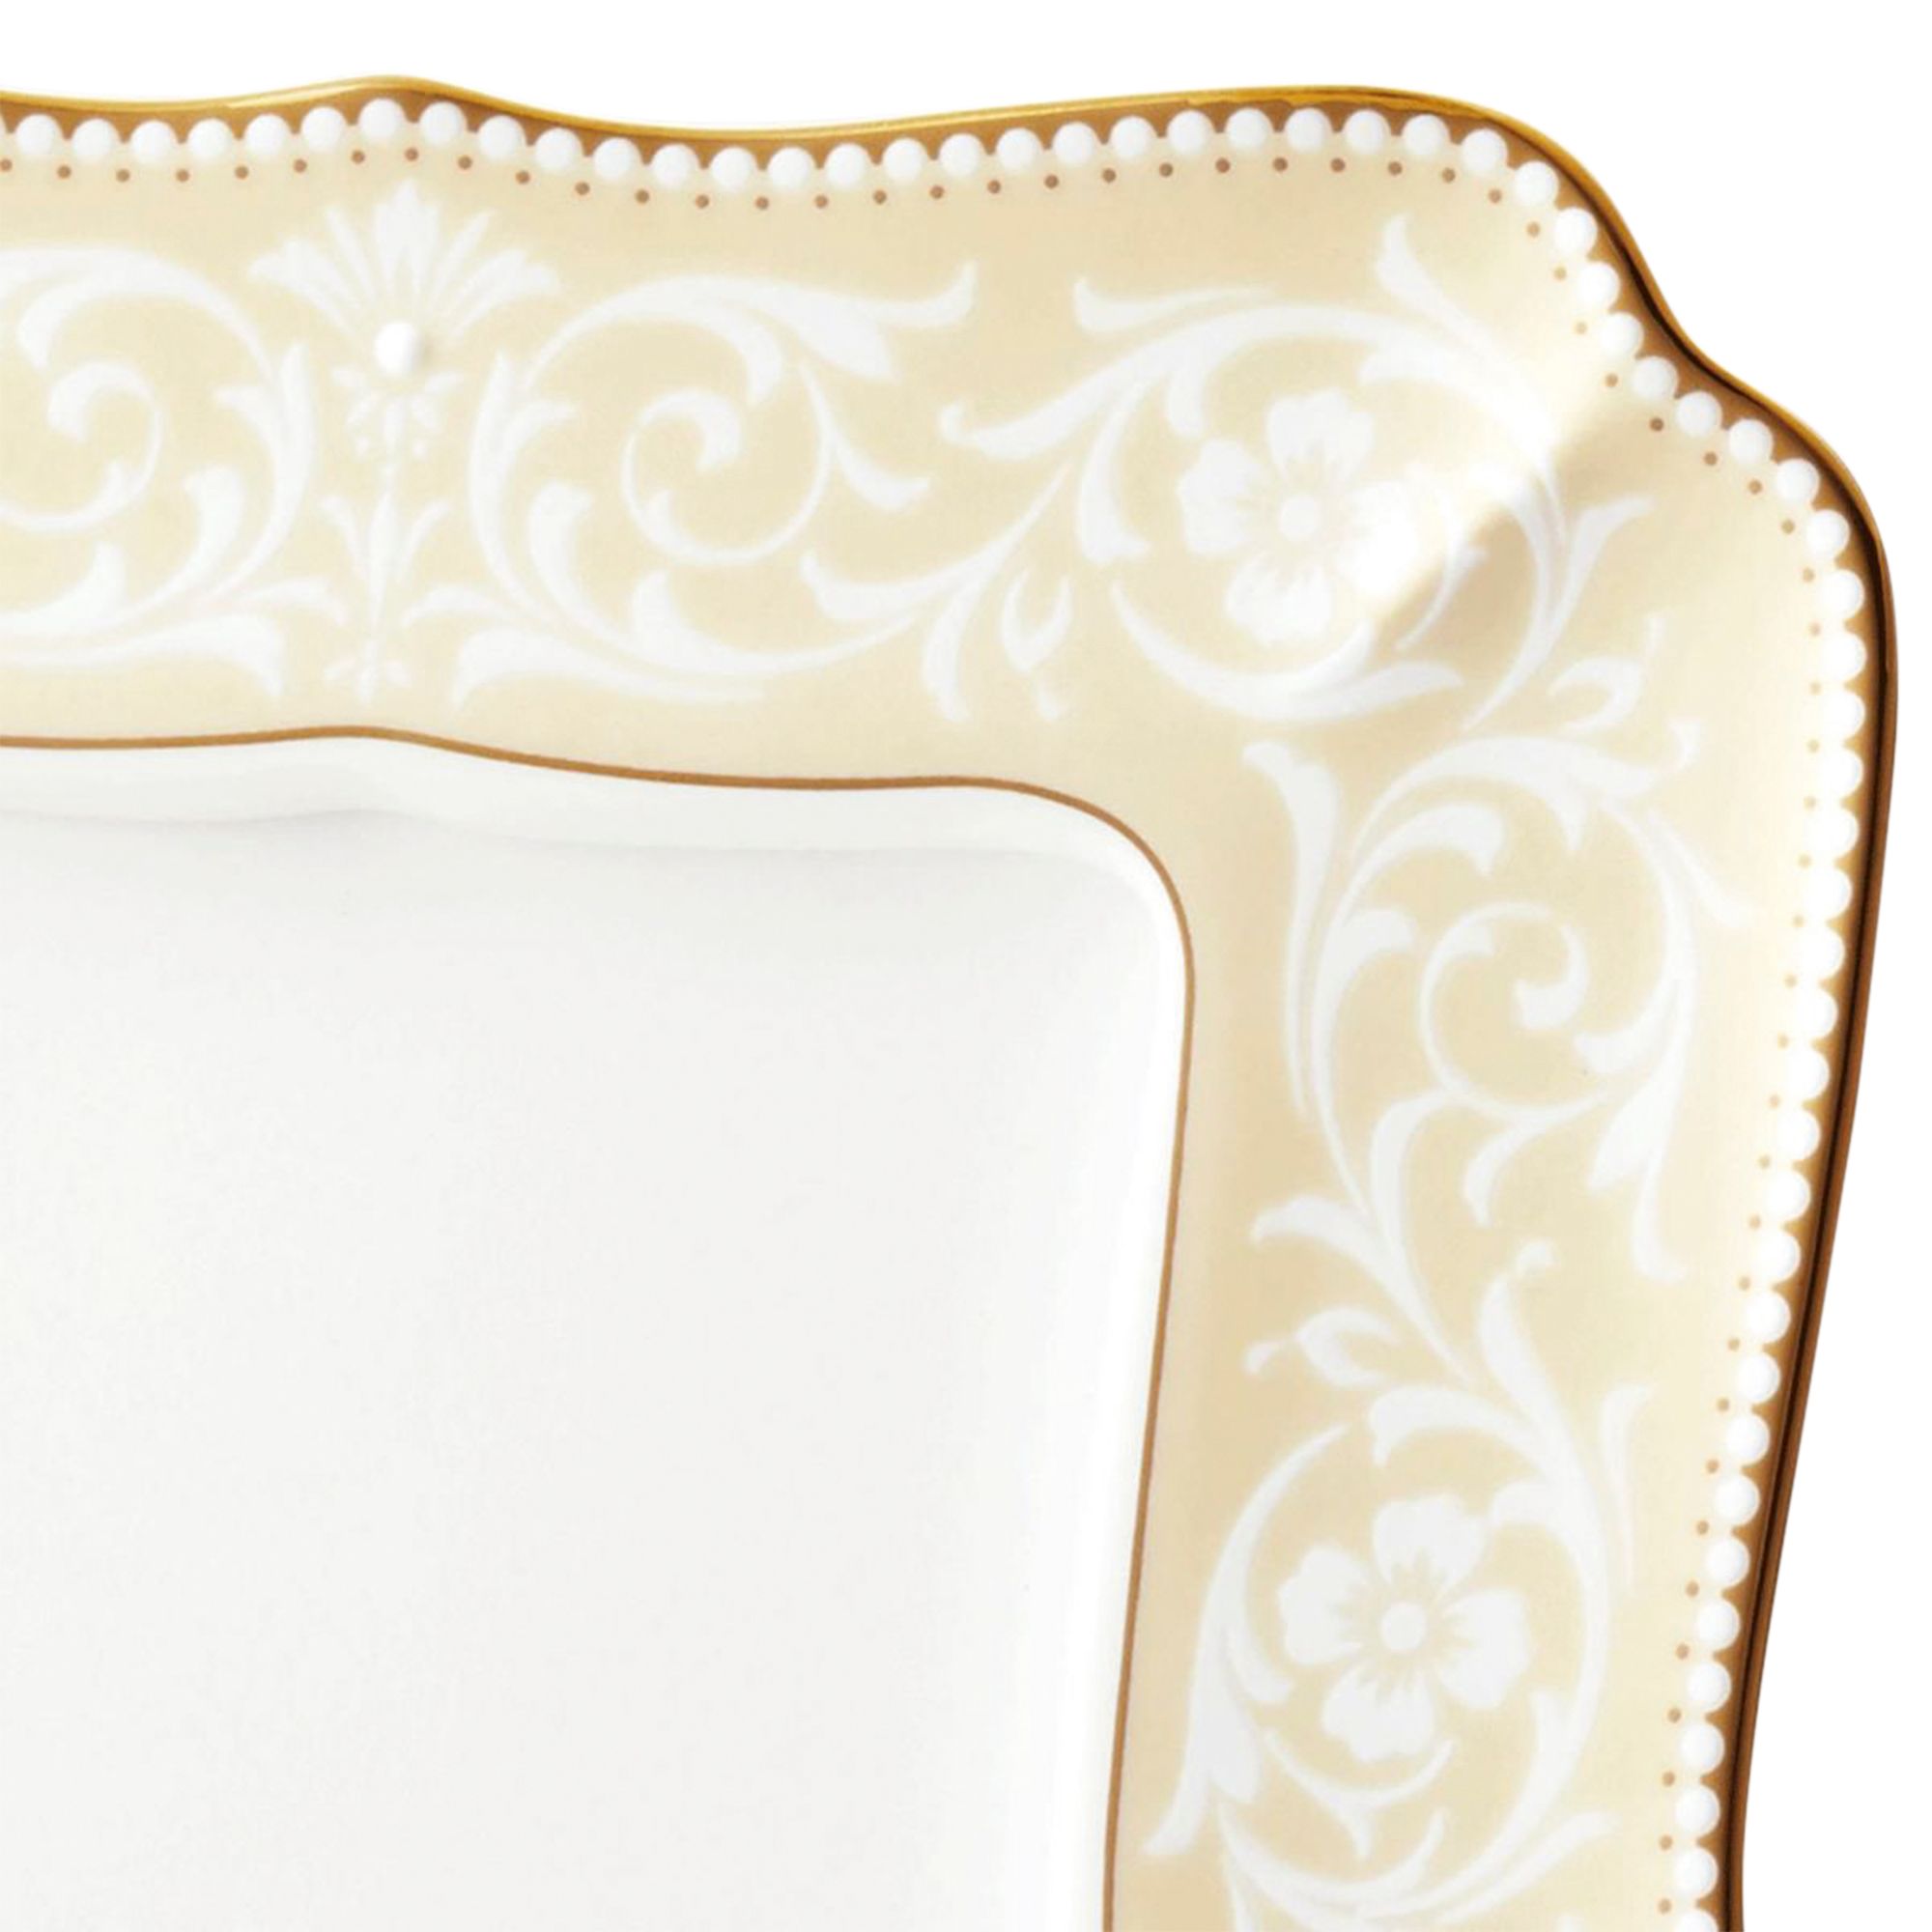  Khung ảnh để bàn Maison Coll White Lace ( chiều dài 19.6cm chiều rộng 15.7cm ) 